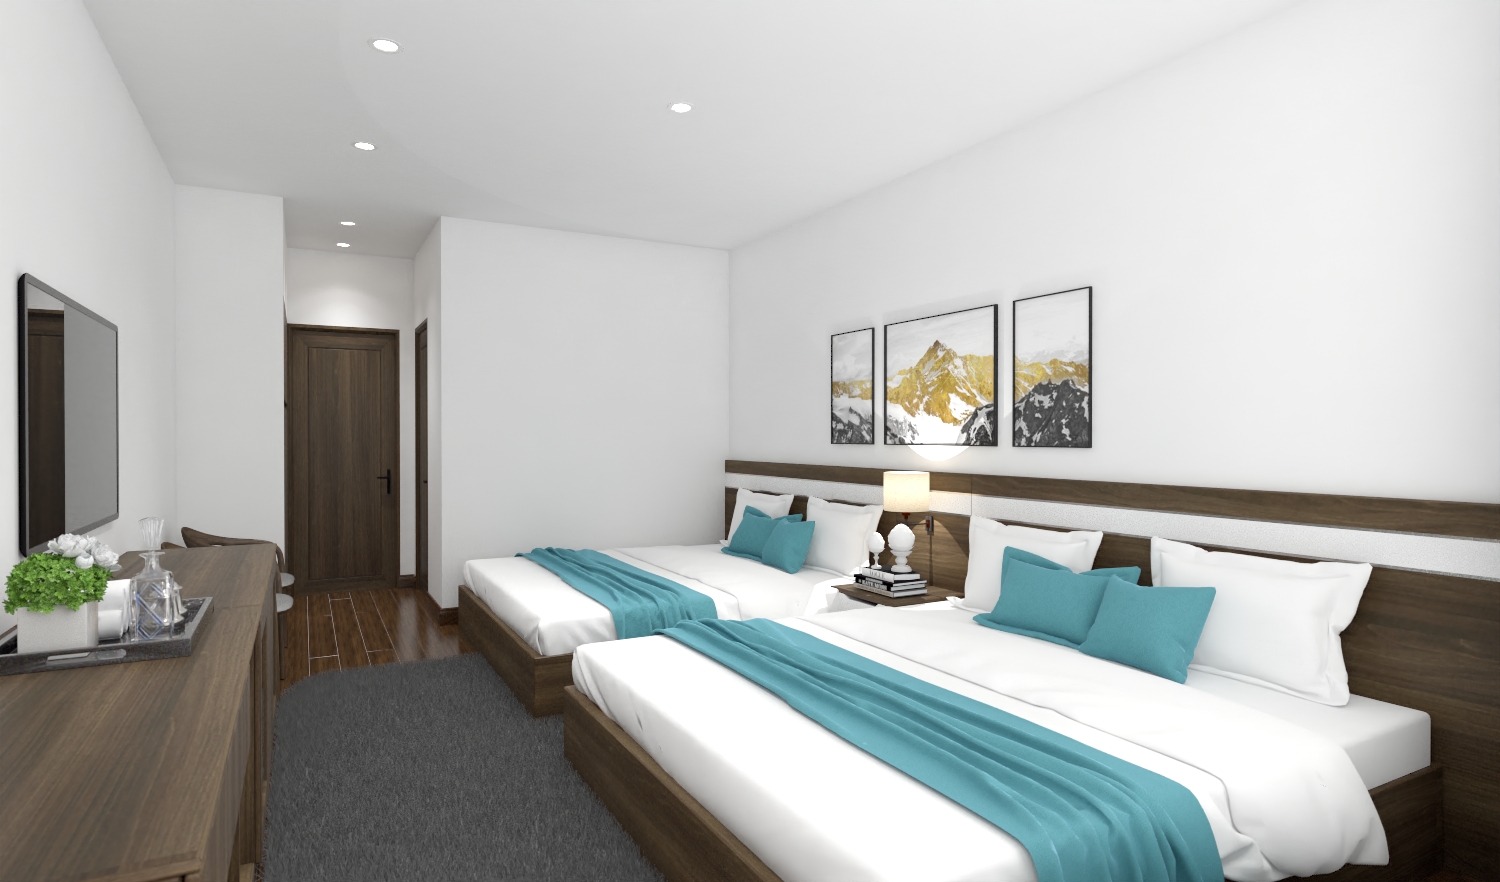 Thiết kế nội thất Khách Sạn tại Quảng Ninh Nhà nghỉ tại Vân Đồn - Quảng Ninh 1590807447 0